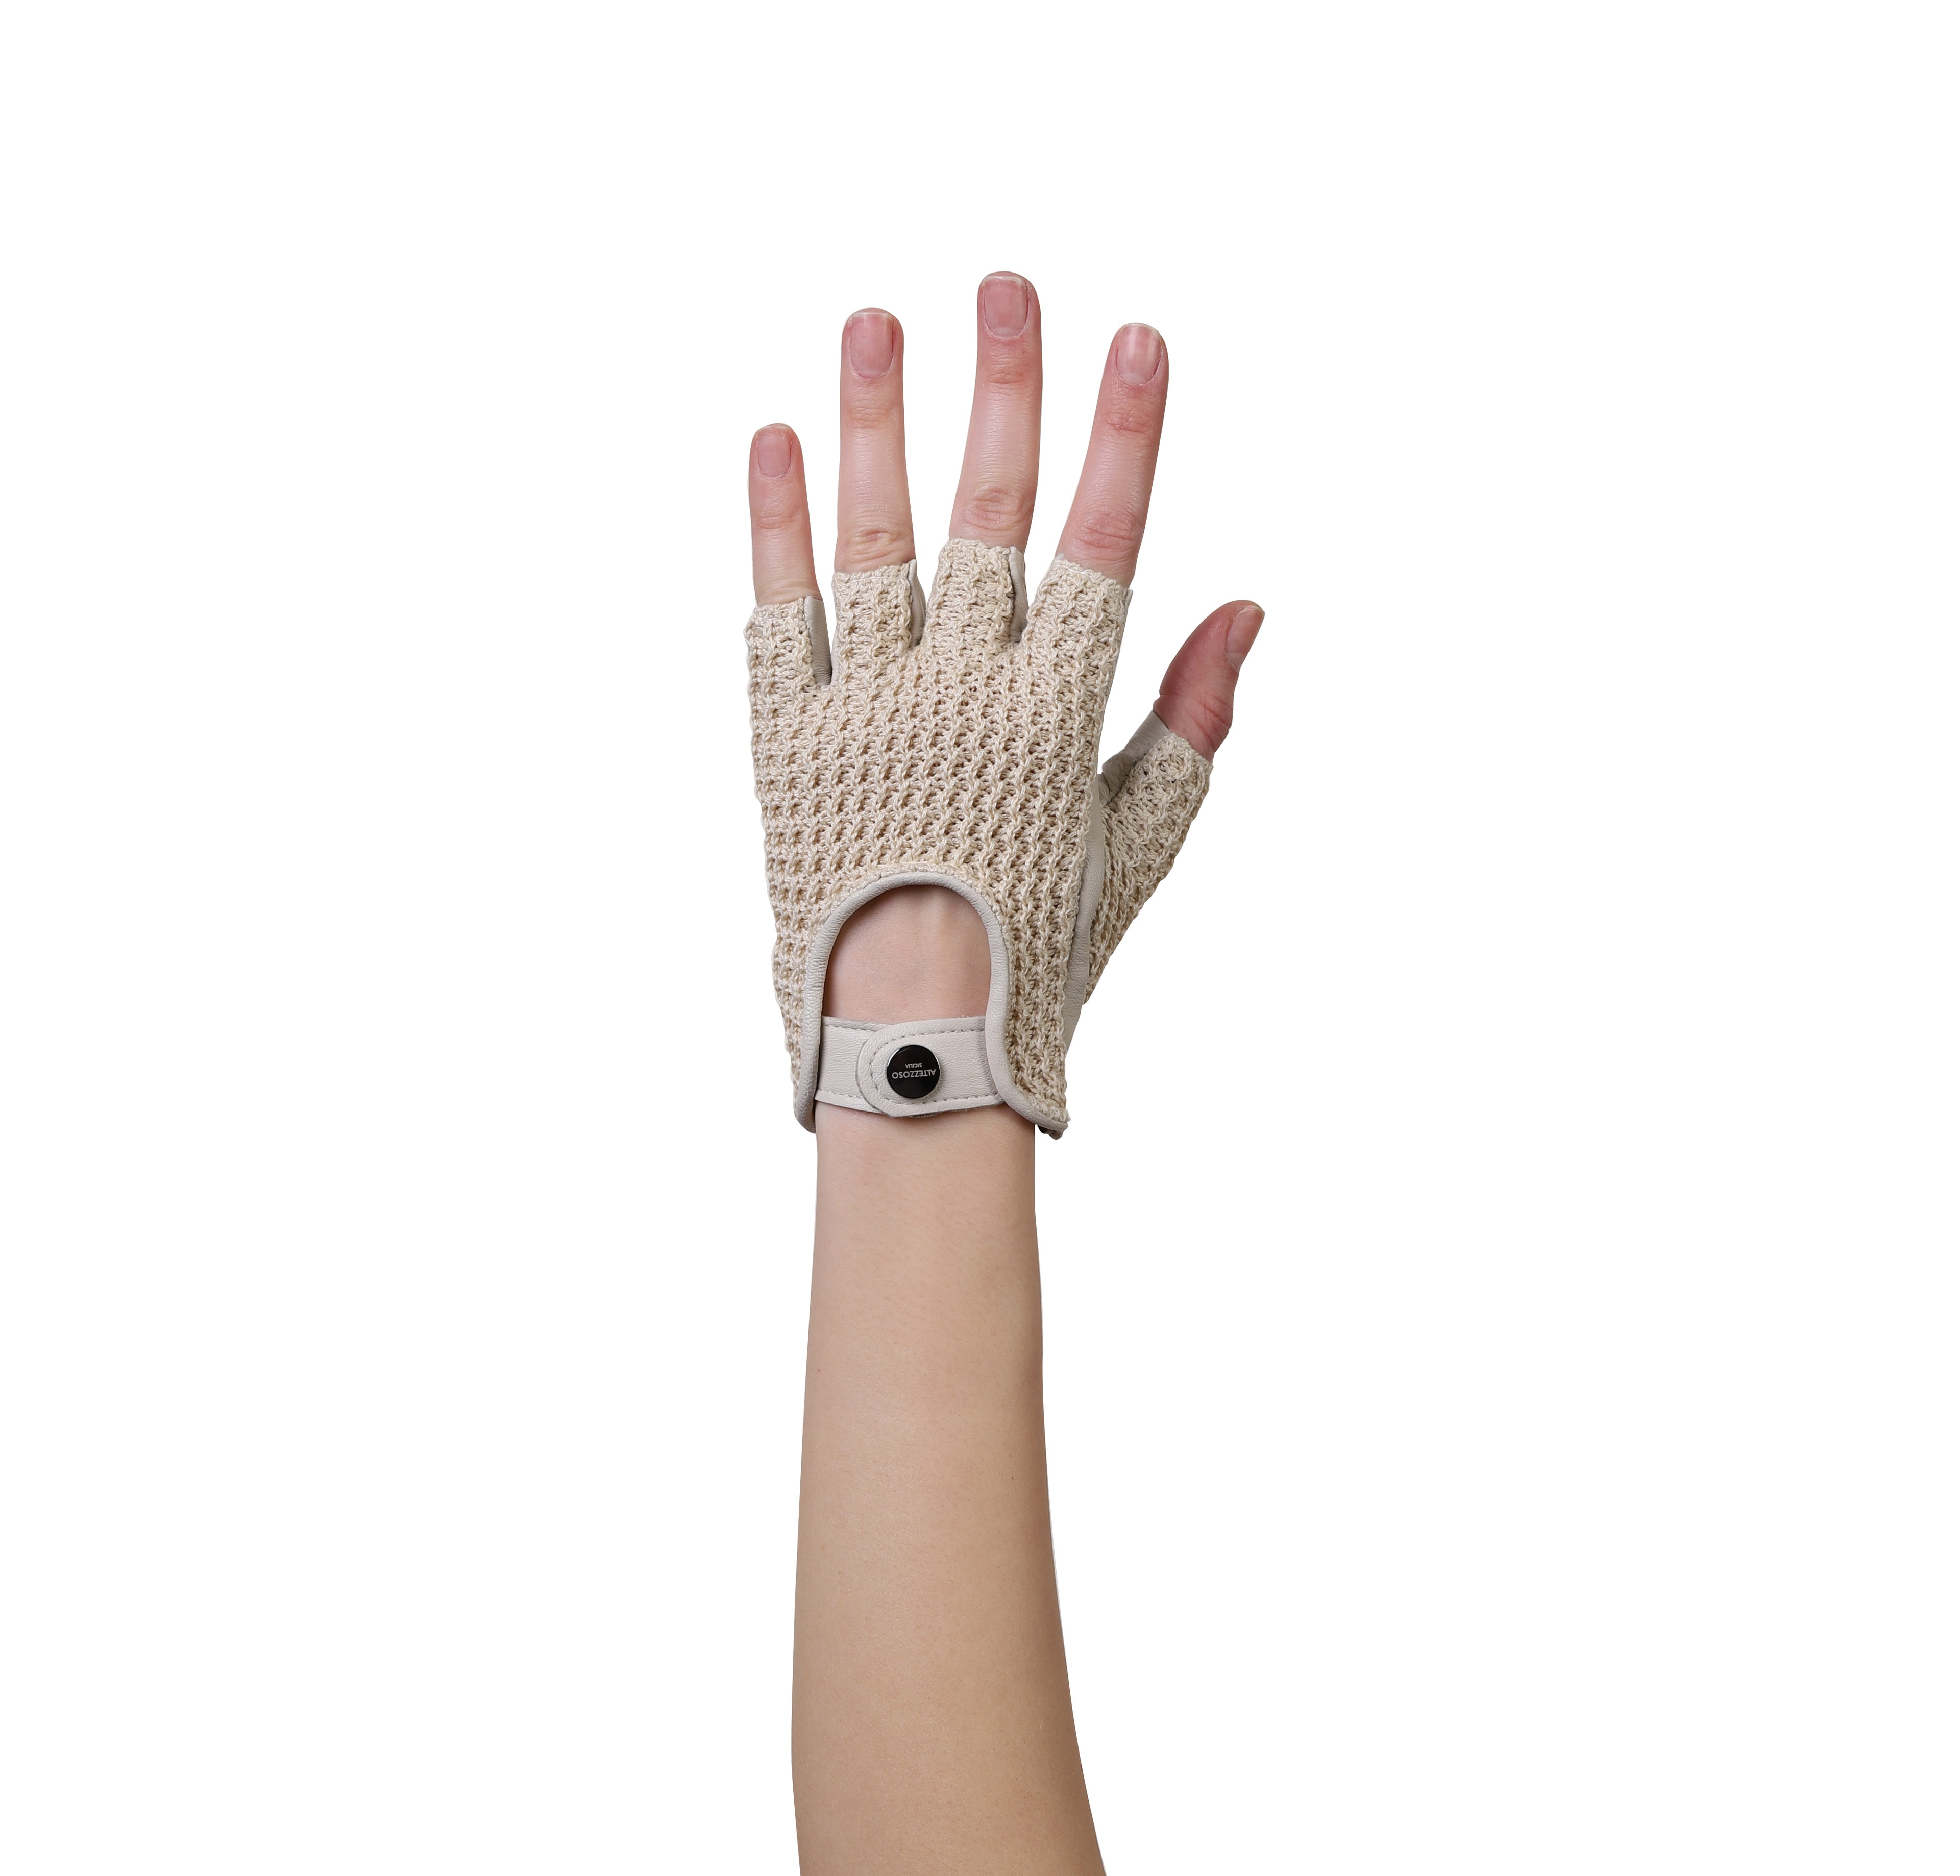 Maglia Fingerless Leather Driving Gloves for Women